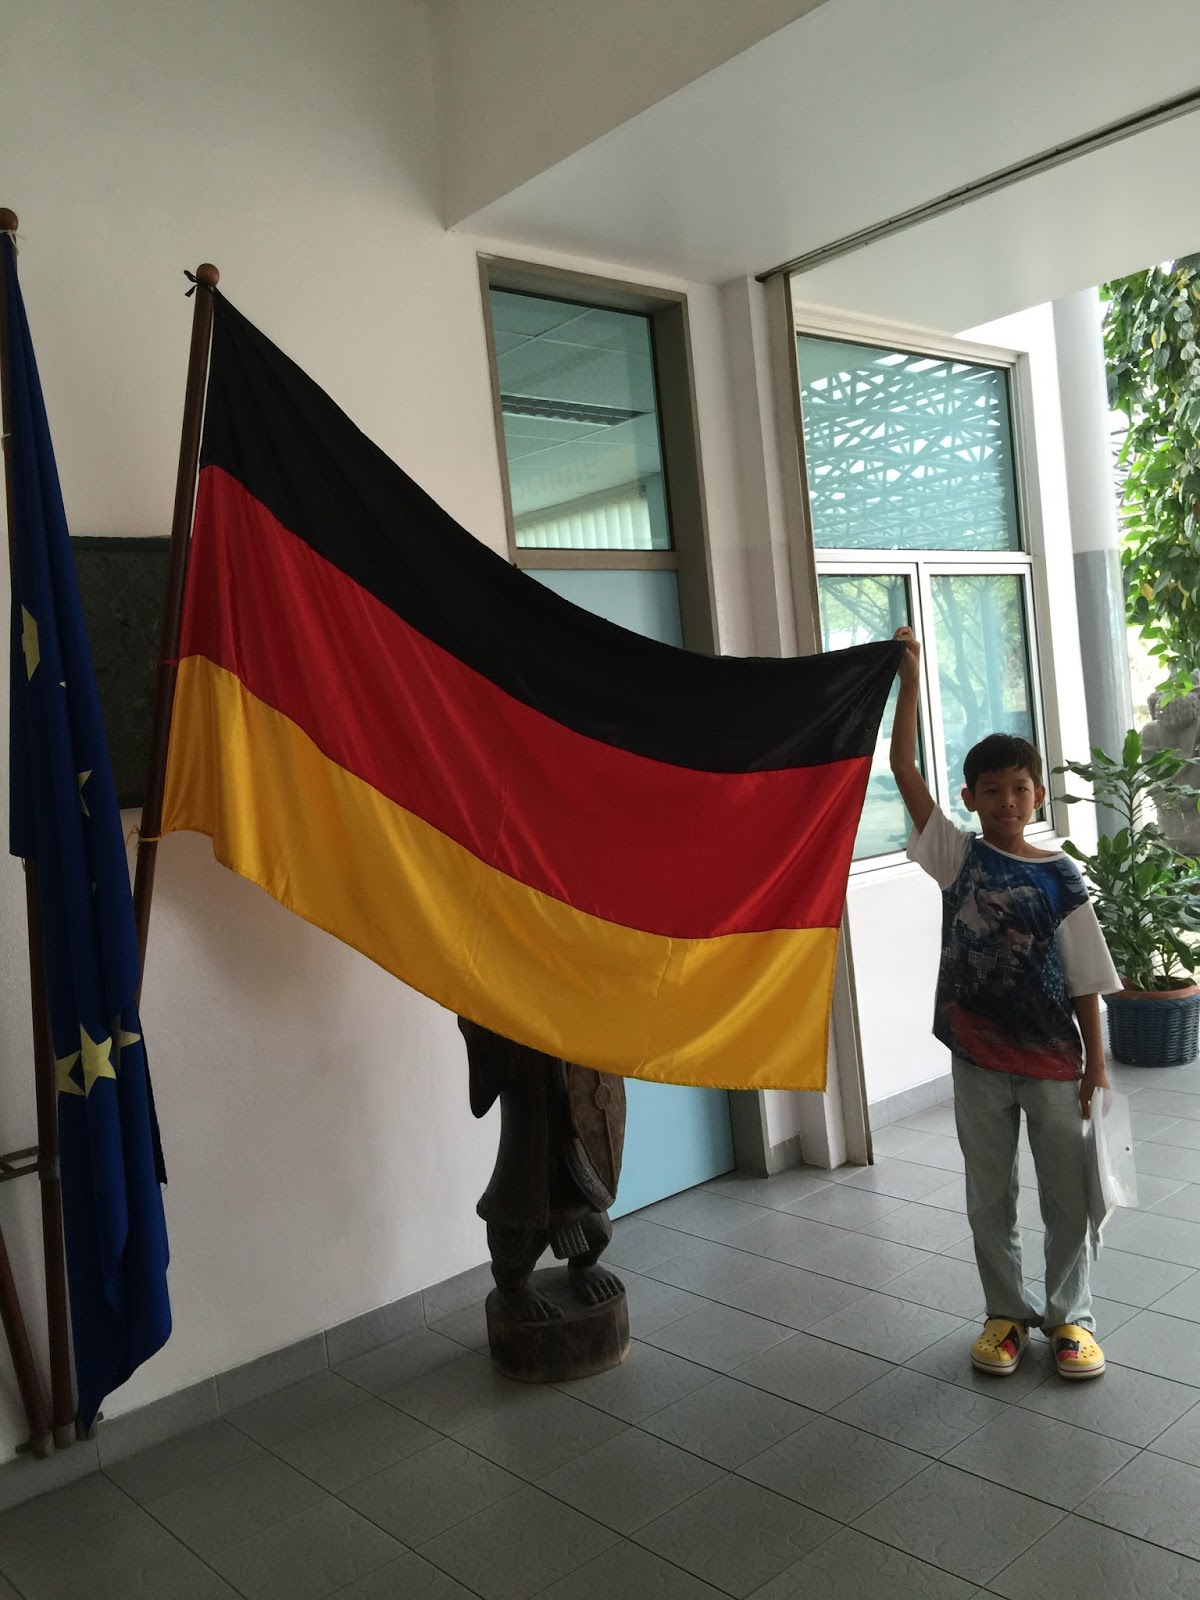 Langkah Kecil Mewujudkan Mimpi Sekolah Di Jerman Kunjungan ke DAAD Jakarta